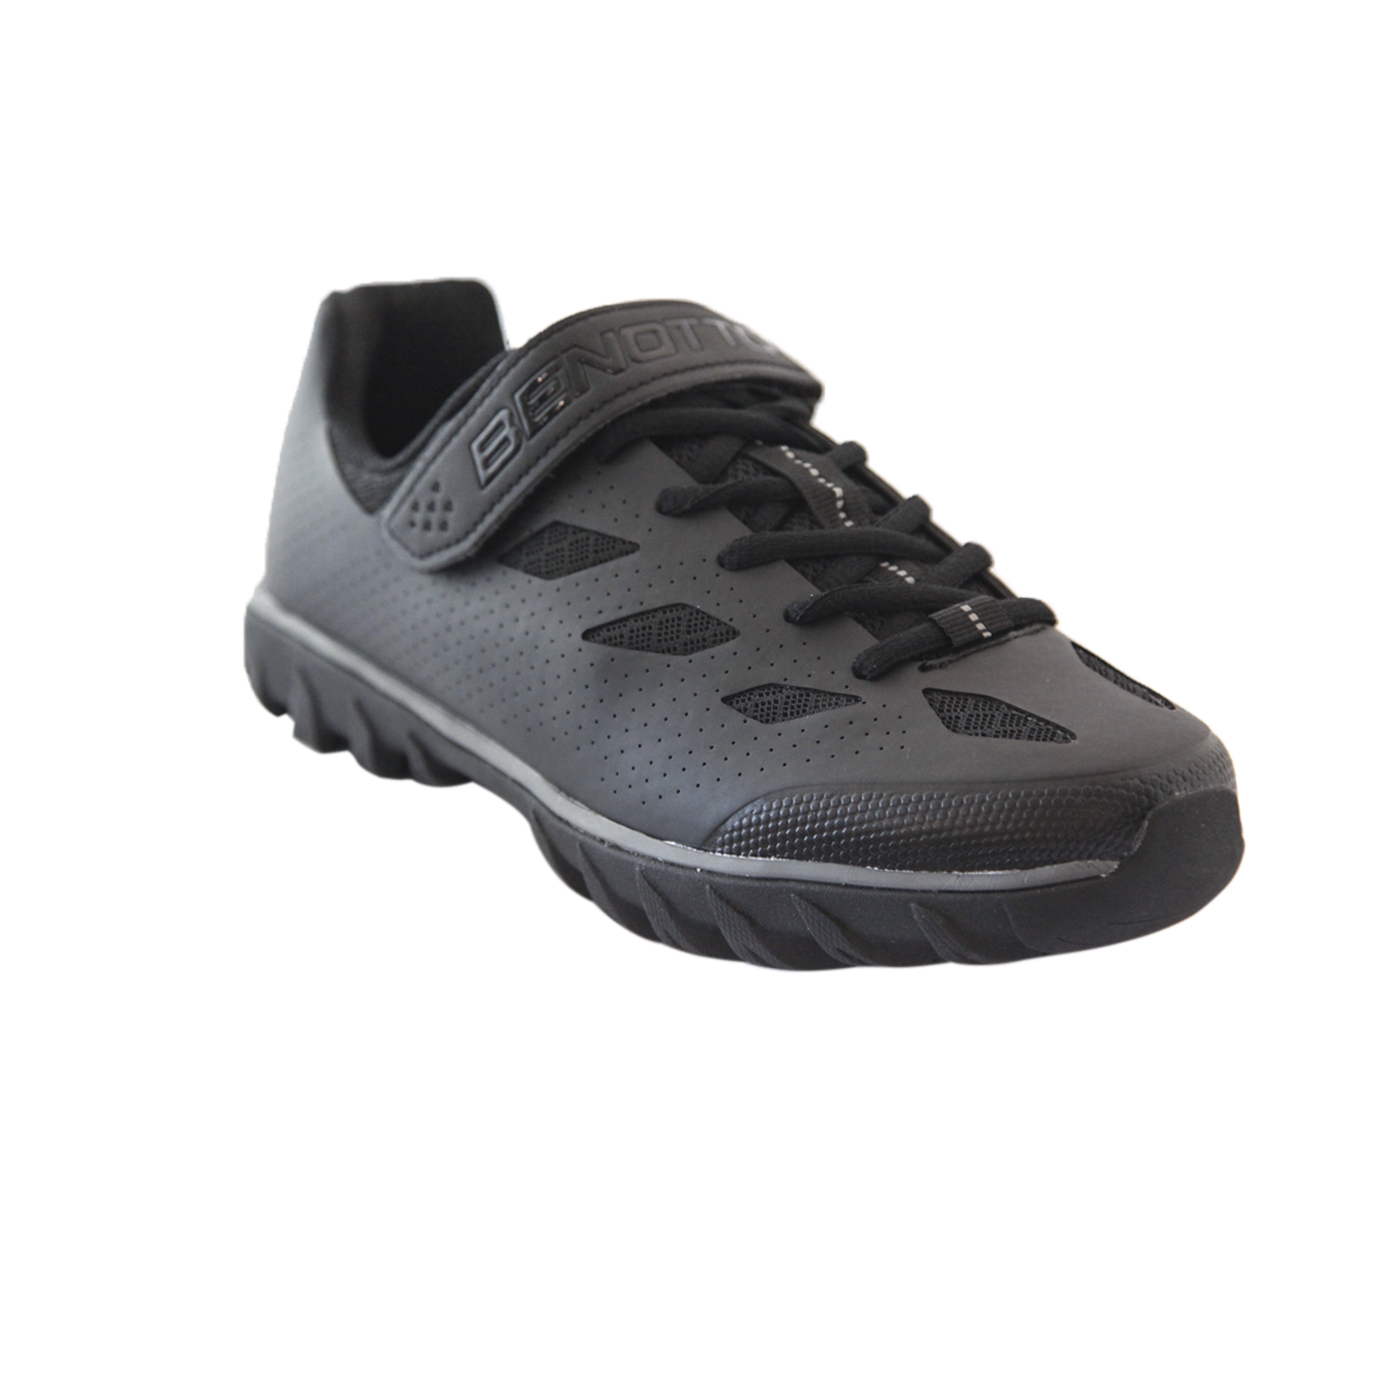 Zapato BENOTTO Montaña-Spinning con agujeta Med:39.0/25.0 Negro